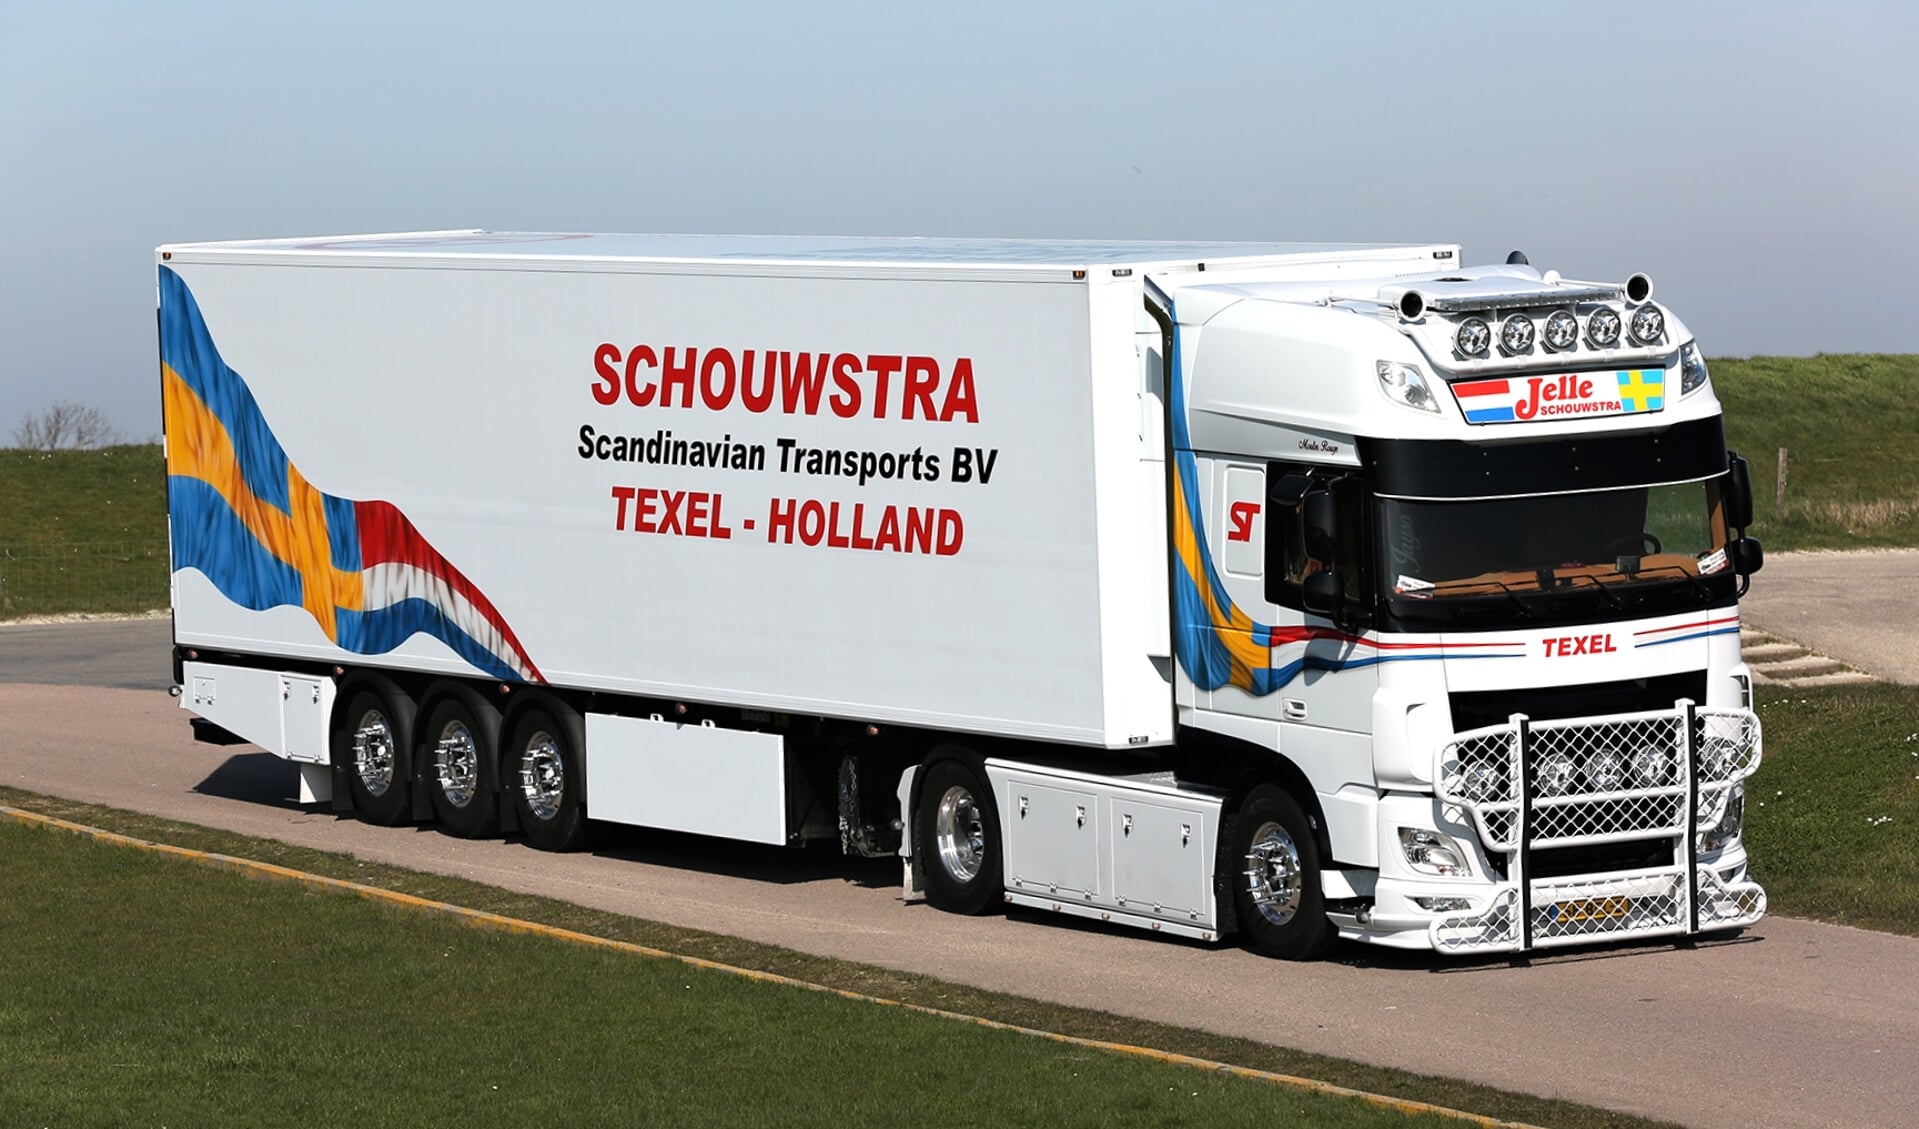 De truck waarmee Jelle Schouwstra kans maakt op de titel Mooiste Truck van Nederland. 